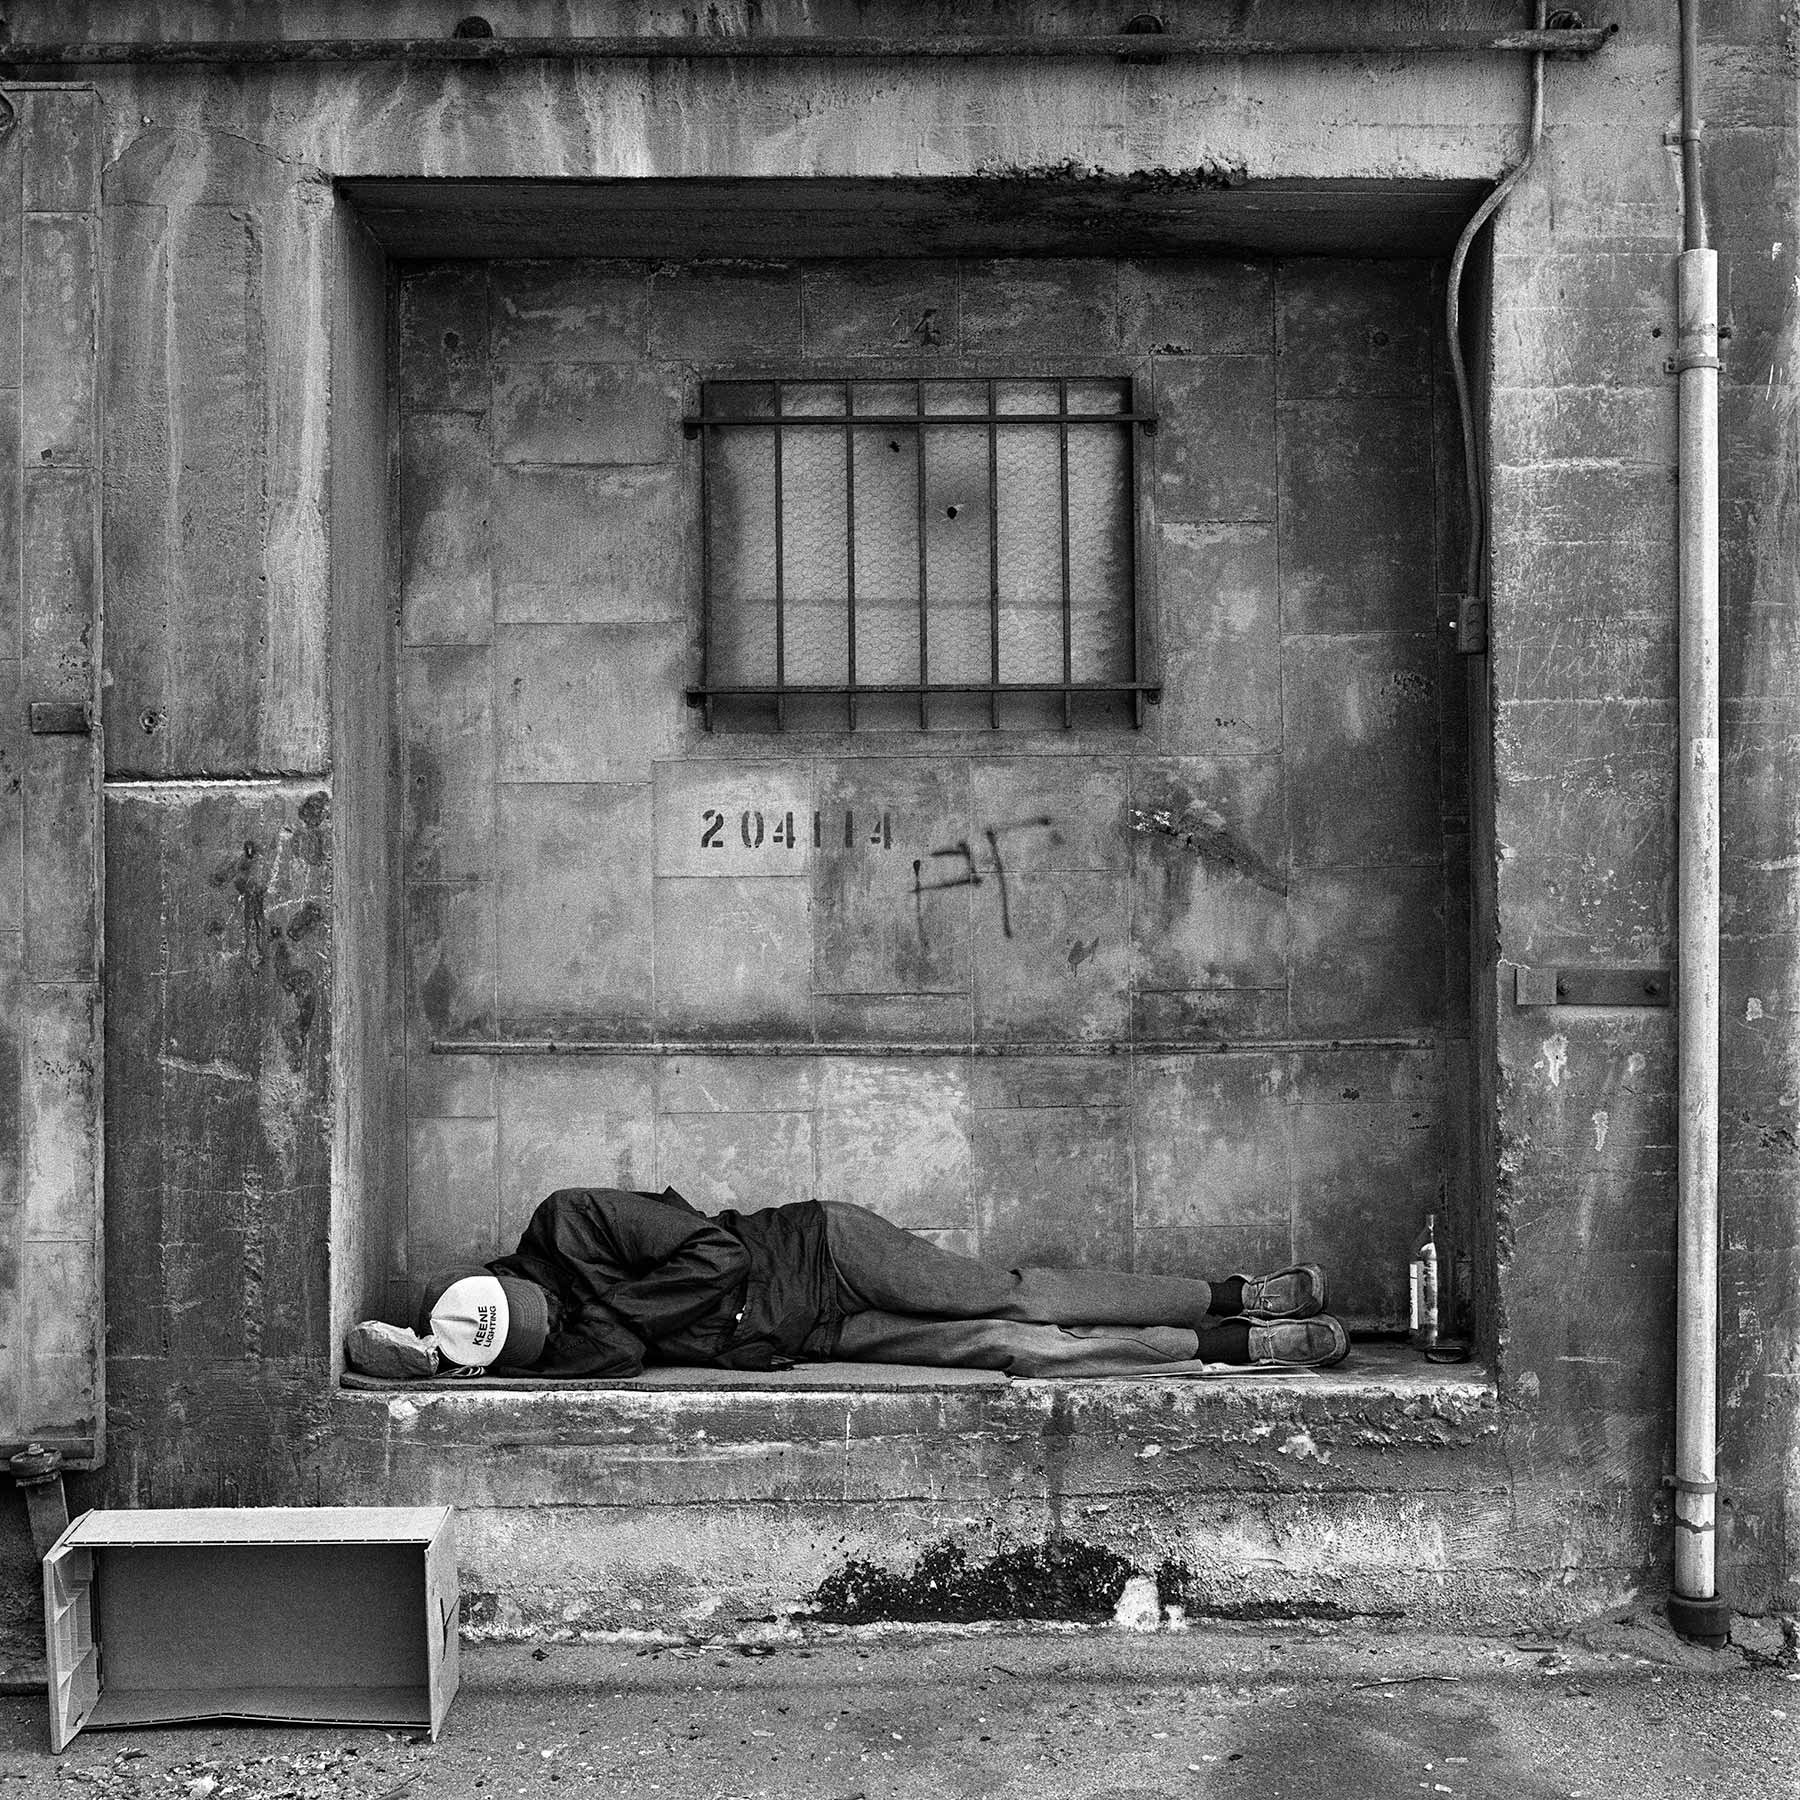 Sans-abri en train de dormir – Arts District, Los Angeles, Californie, 1983